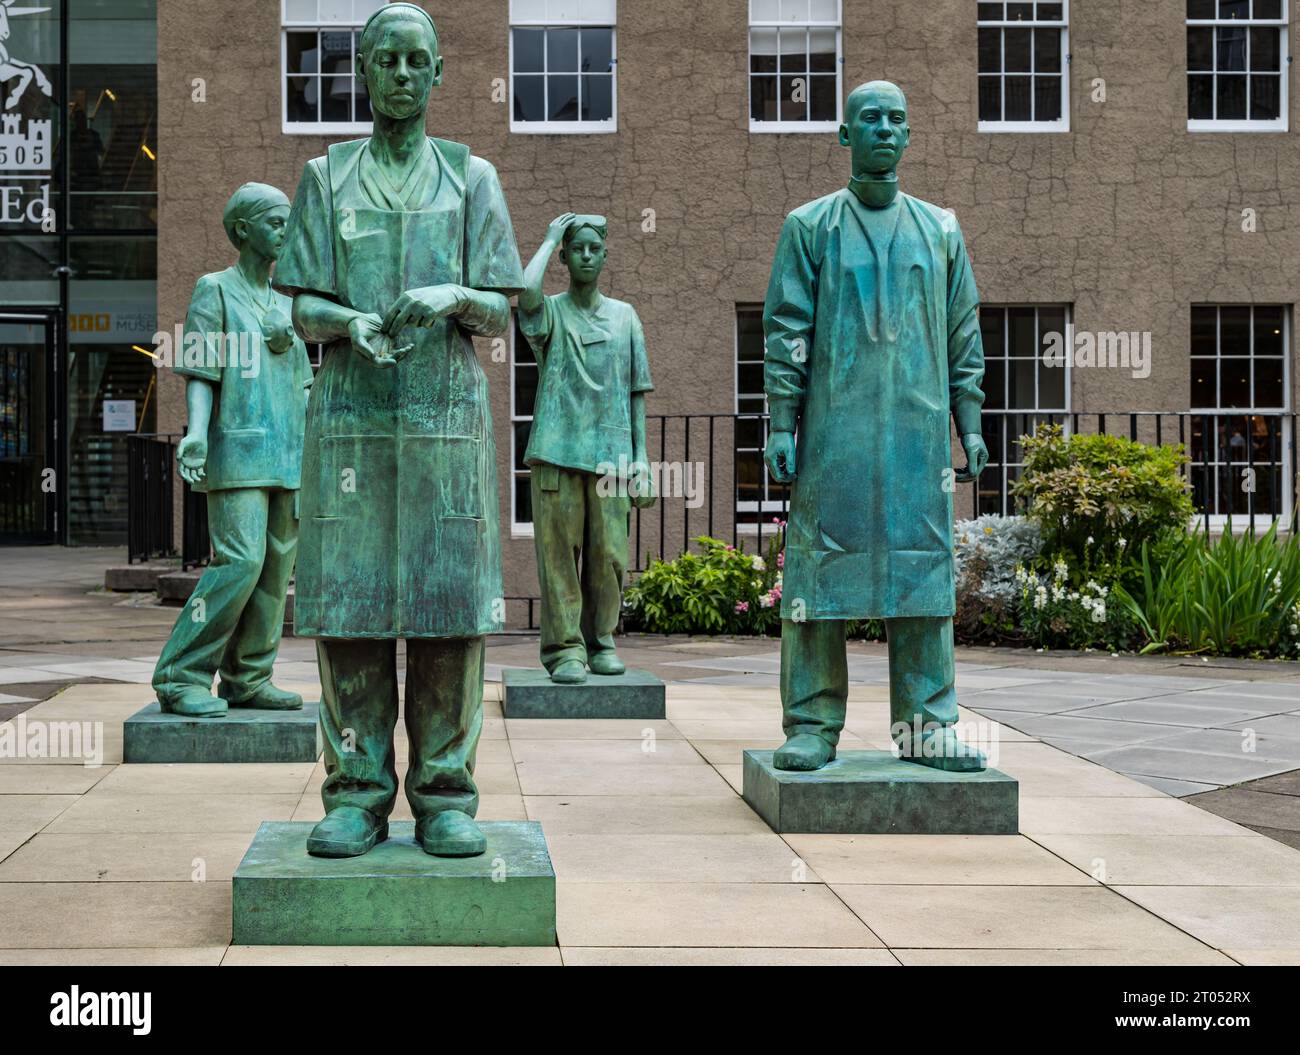 Bronze-Gedenkstatuen des medizinischen und pflegenden Personals des NHS während der COVID-19 durch den Bildhauer Kenny Hunter, Royal College of Surgeons, Edinburgh, Schottland, Vereinigtes Königreich Stockfoto